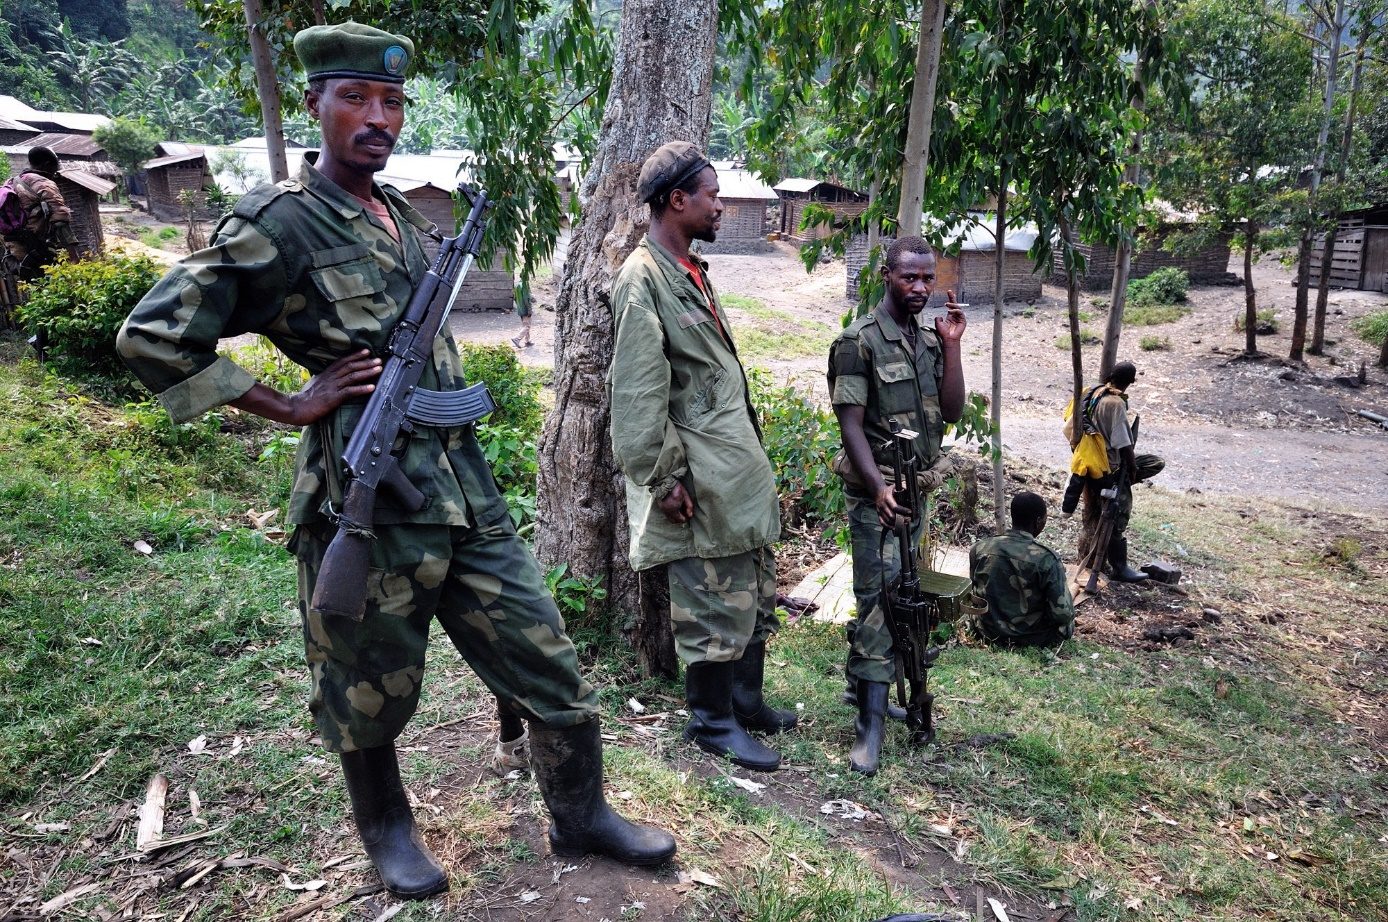 M23-rebellen in het oosten van Congo (foto: Wikipedia).